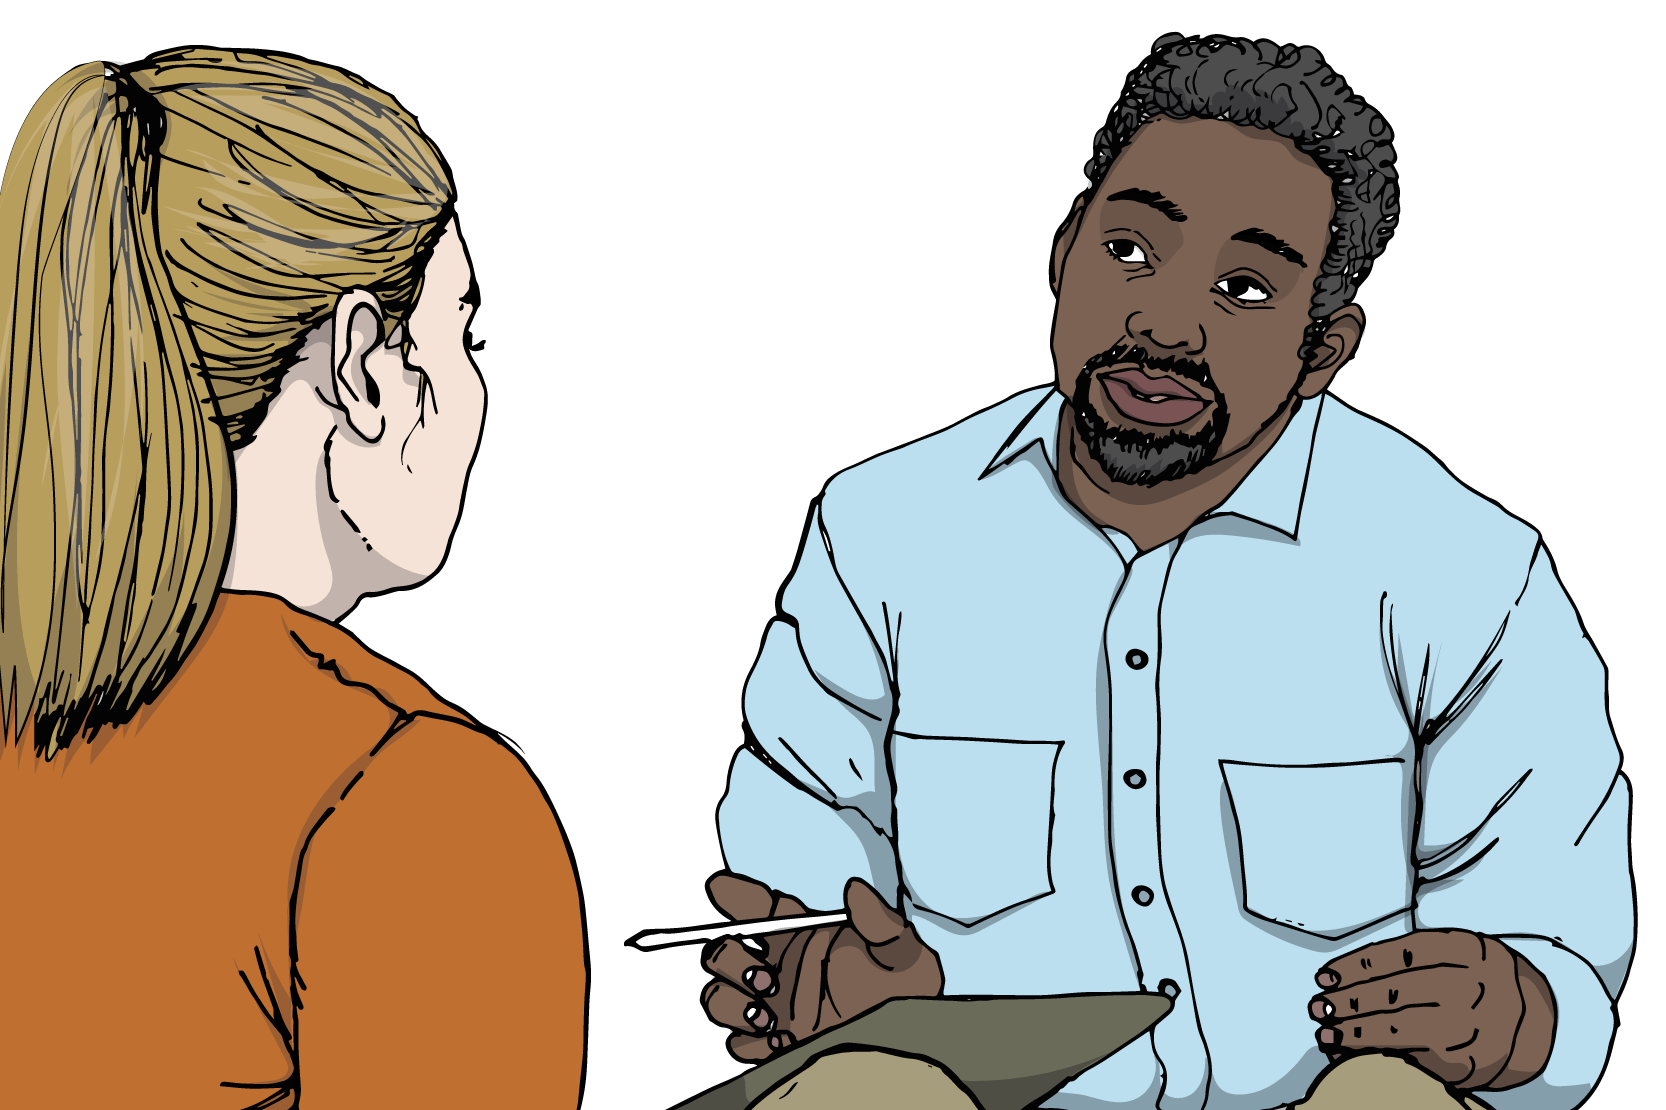 En ung person som pratar med en vuxen som ser förstående ut. Illustration.